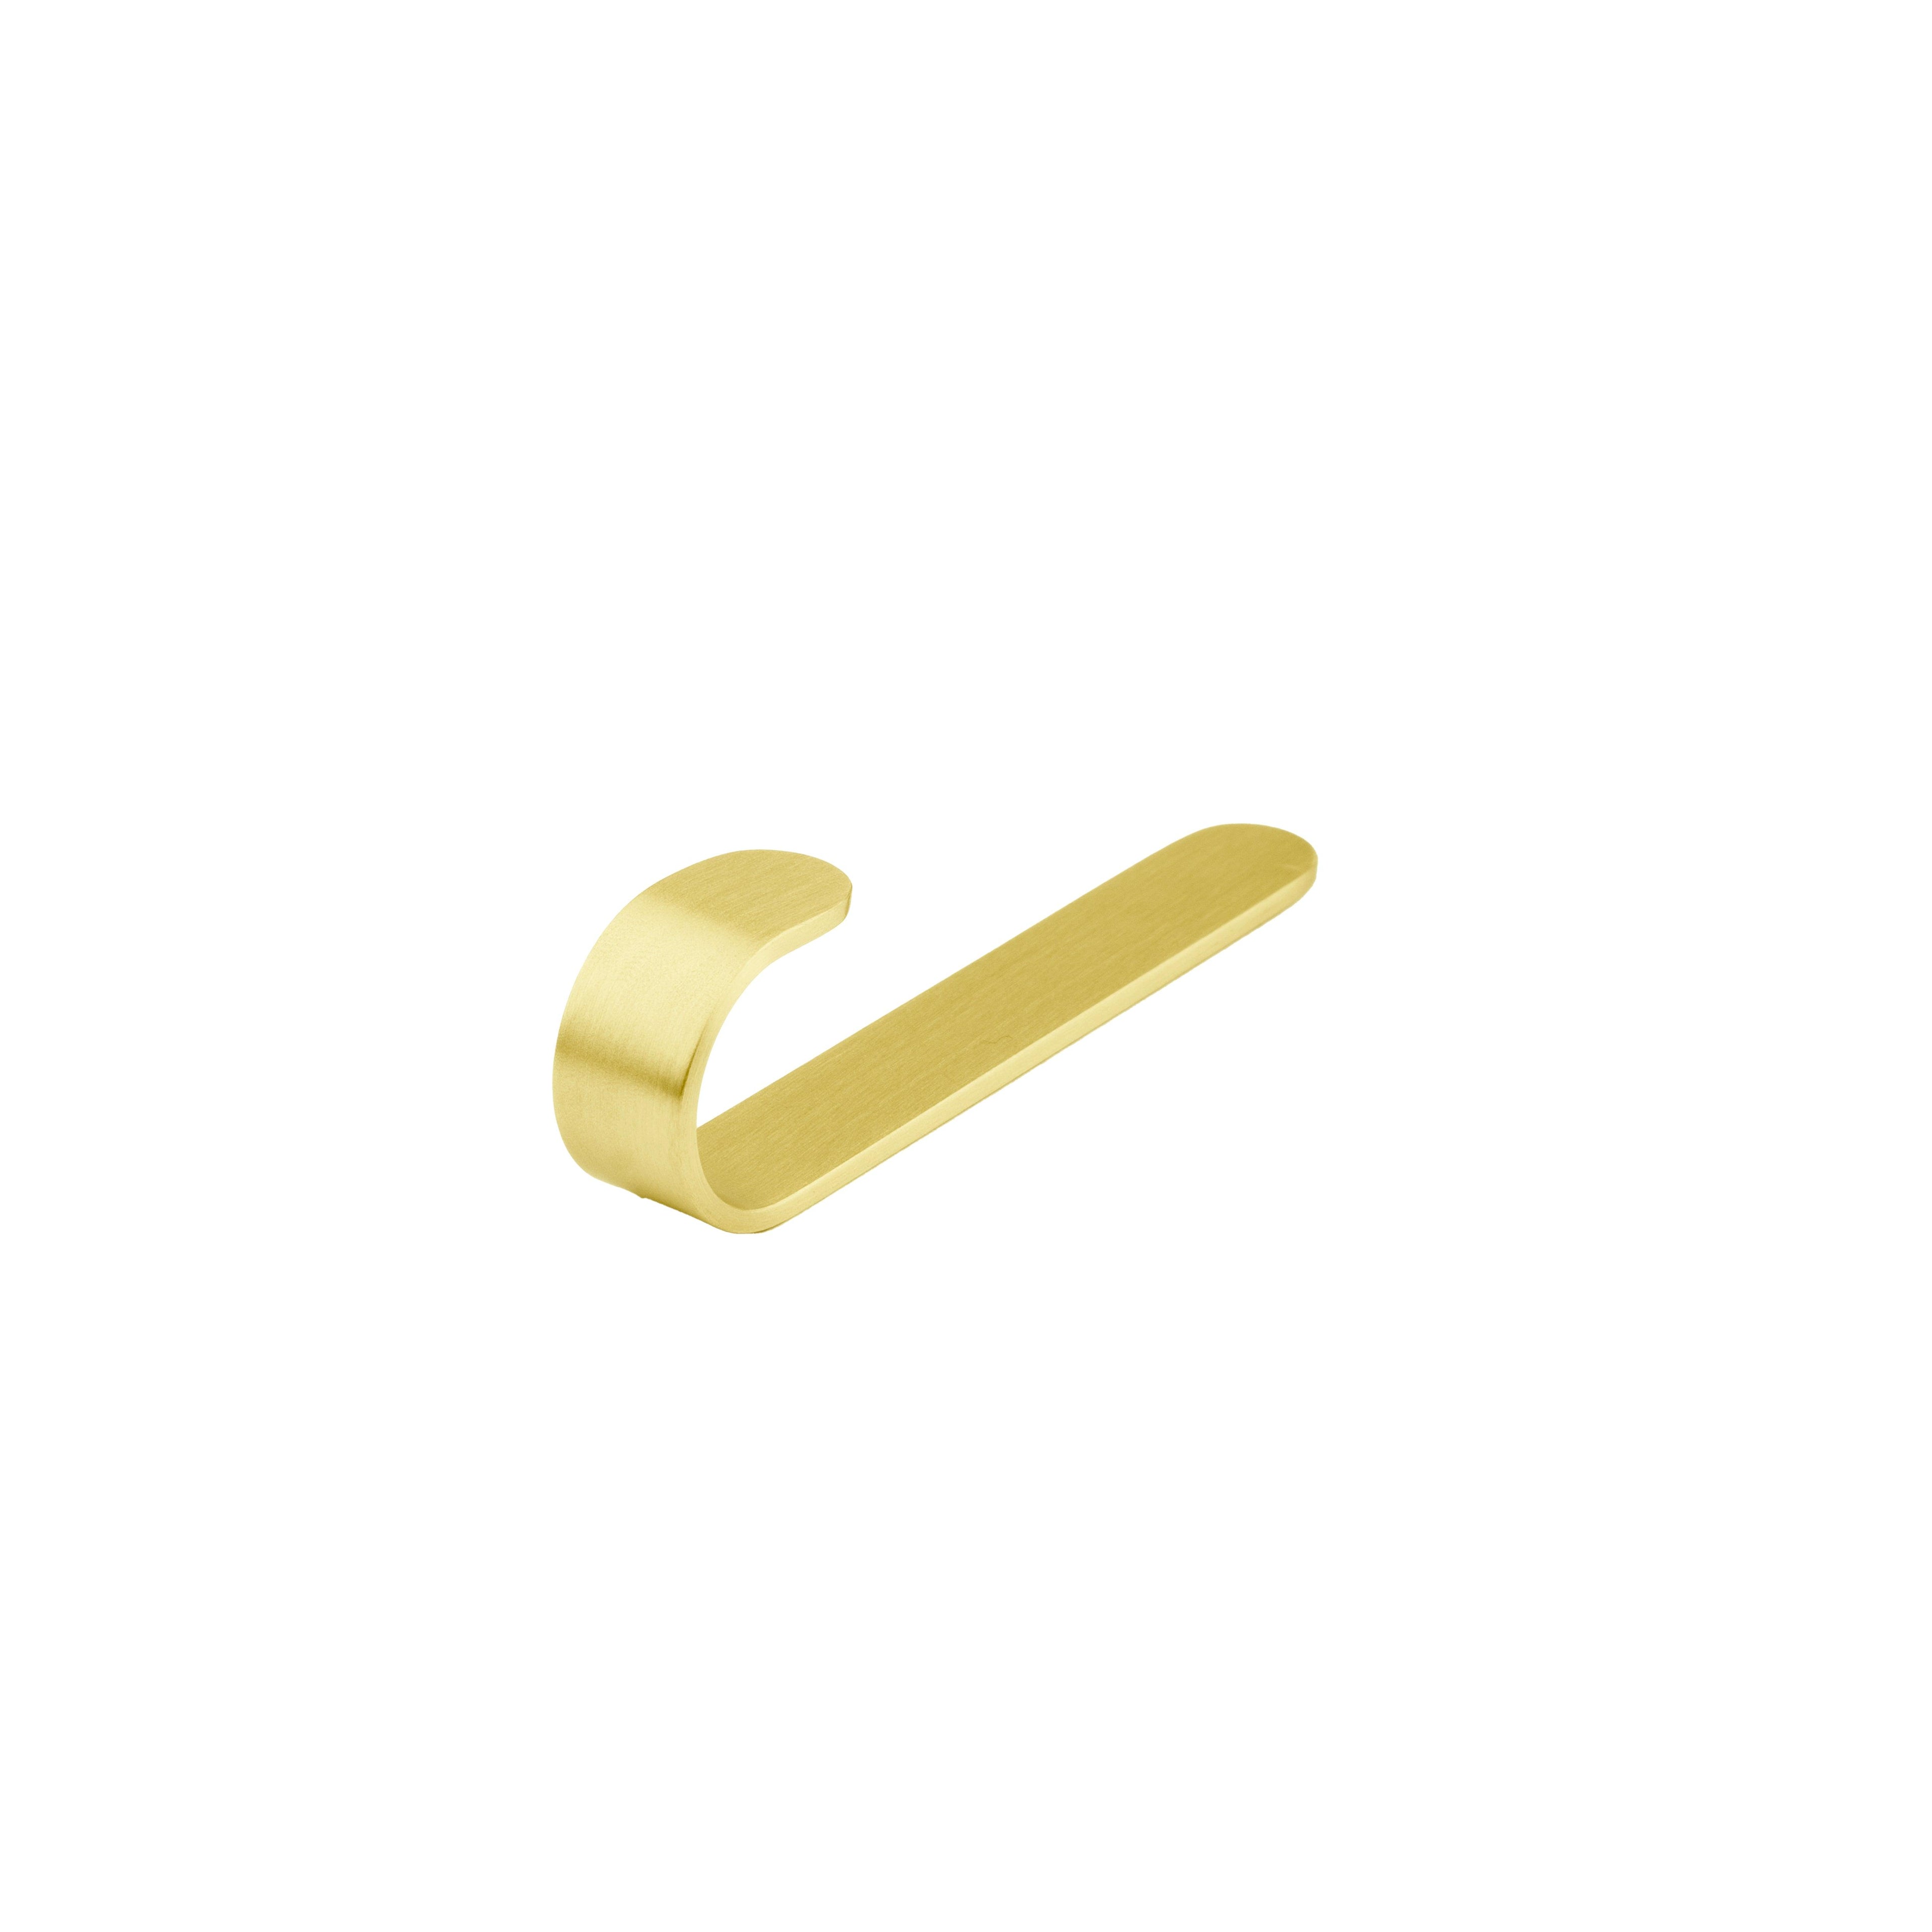 Aria Hook Hook 75mm / Gold / Brass - M A N T A R A